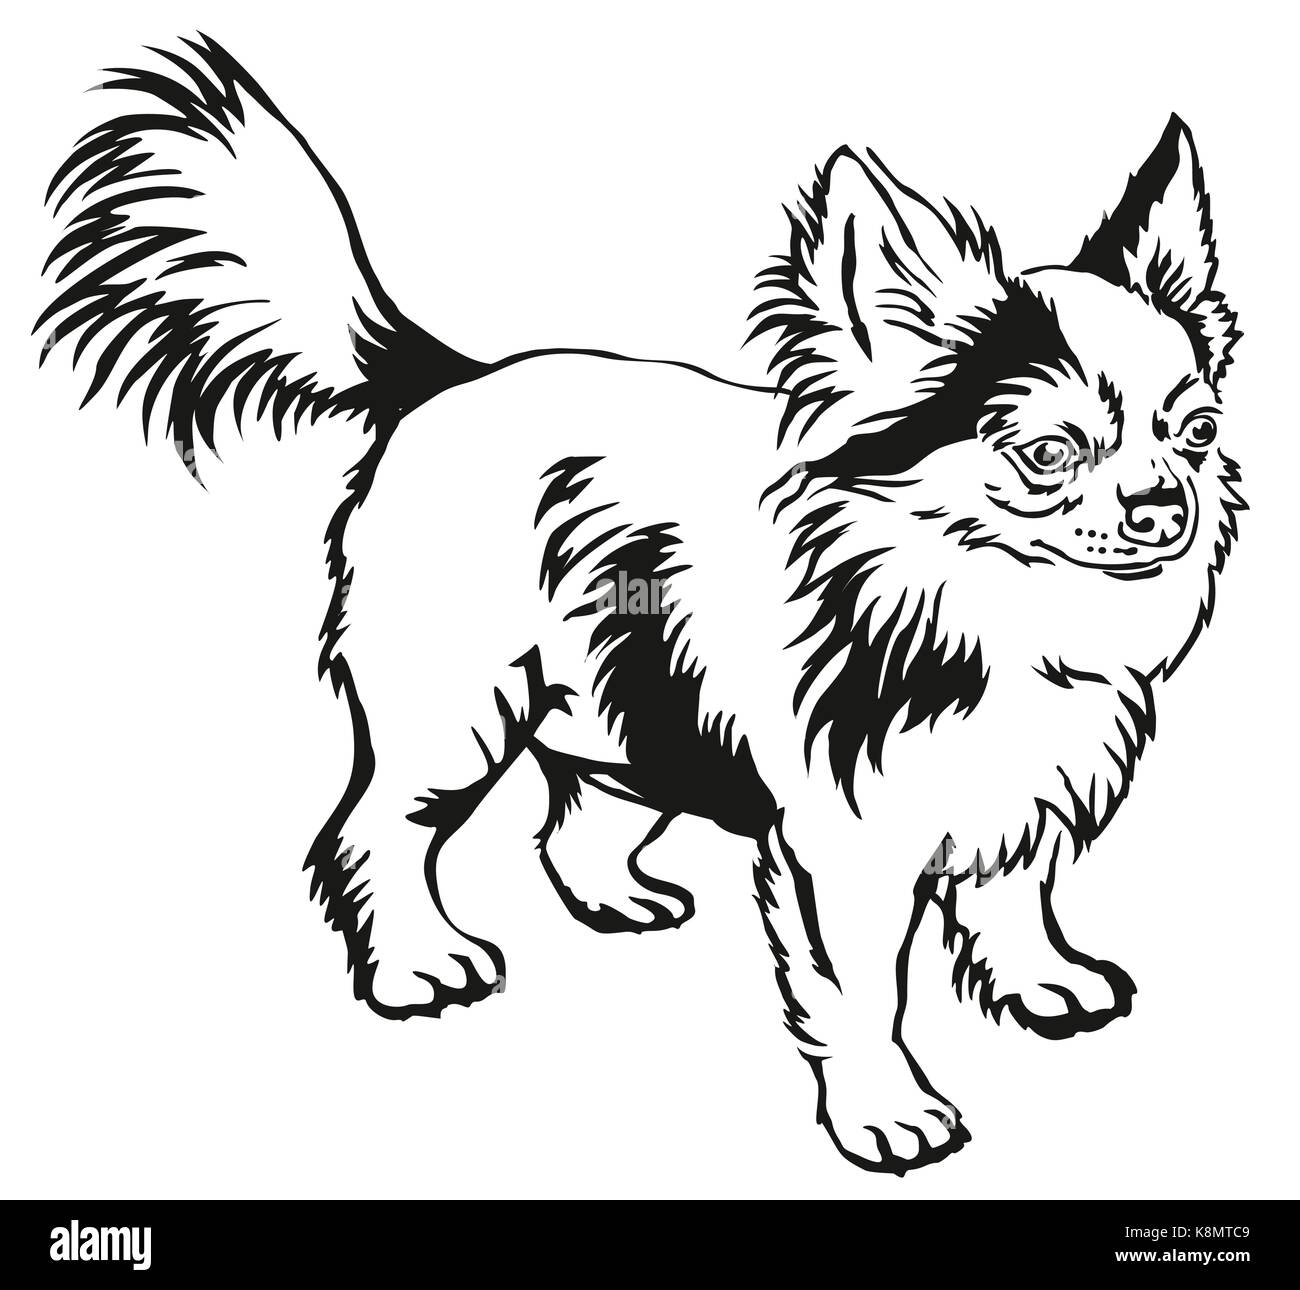 Dekorative Kontur Portrait von ständigen im Profil langhaarige Chihuahua Hund, Vektor isoliert Abbildung in schwarz auf weißem Hintergrund Stock Vektor